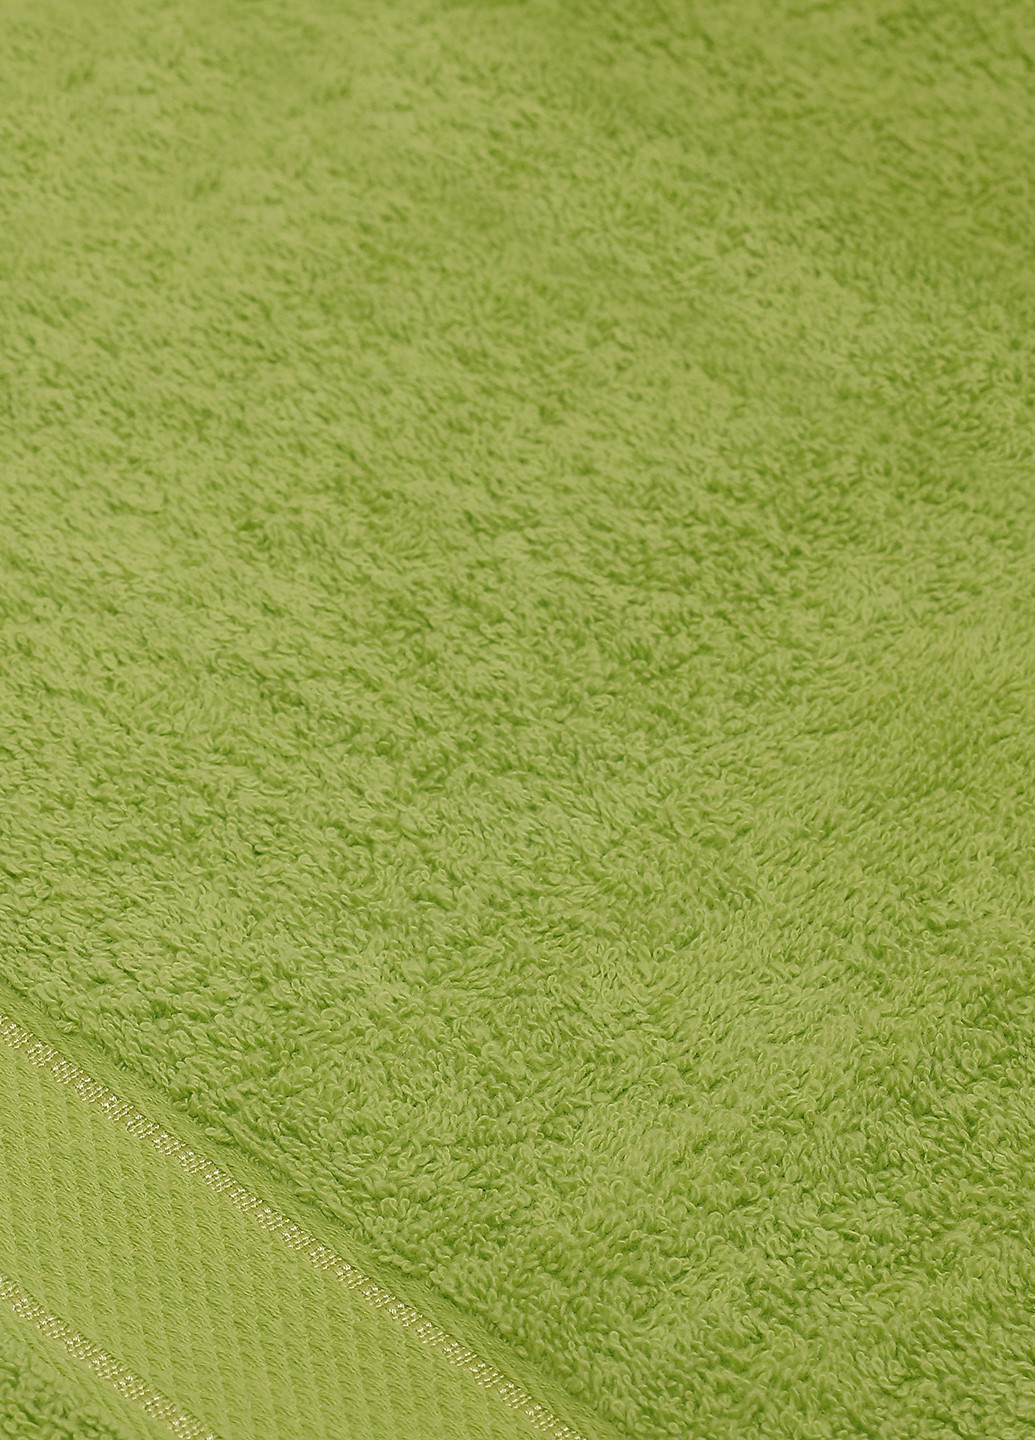 Moorvin полотенце, 50x100 см однотонный салатовый производство - Чехия